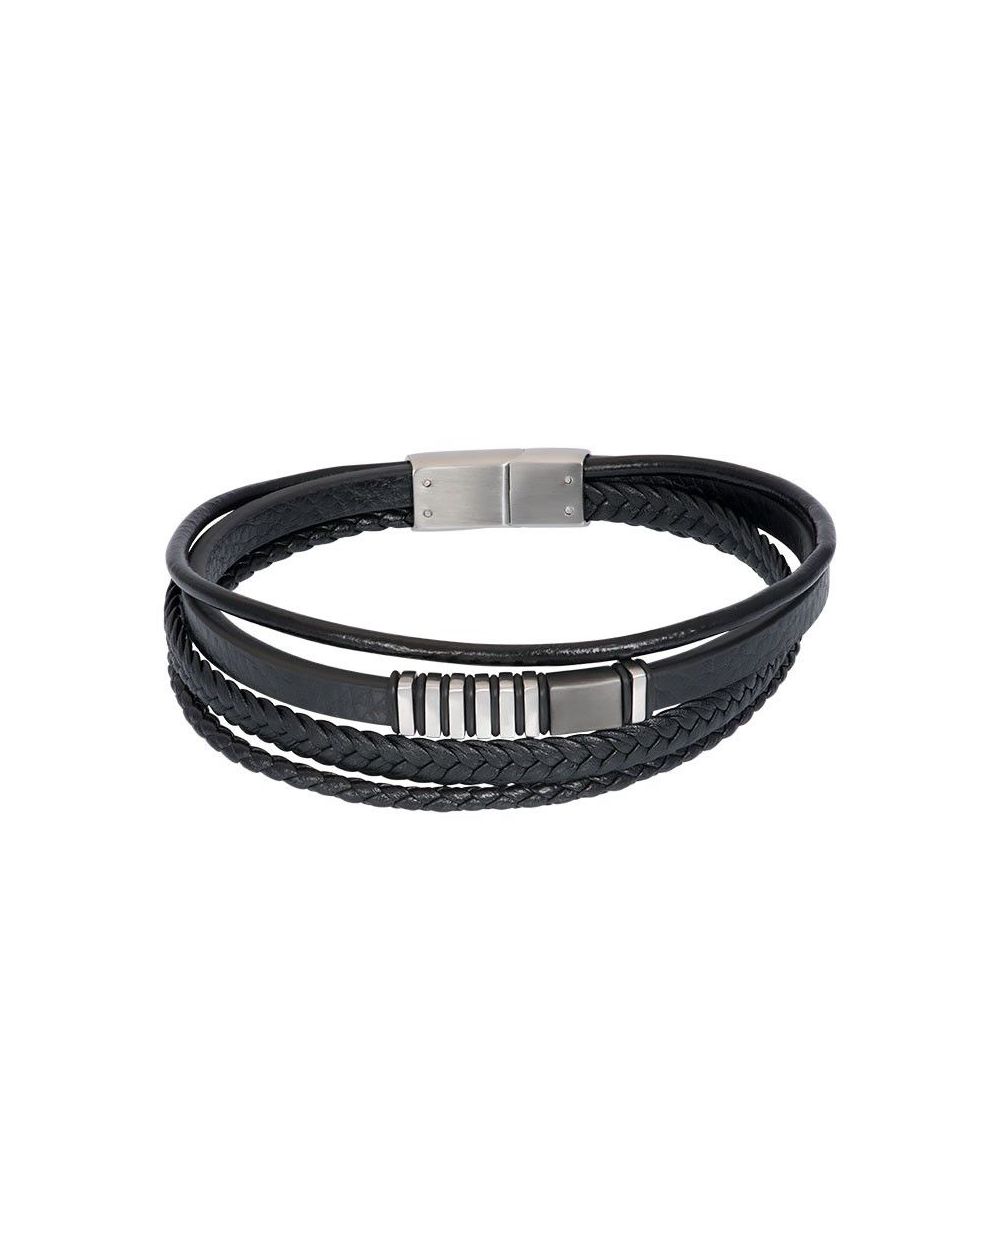 Bracelet iXXXi en cuir pour homme M00520-04 noir - Marque iXXXi